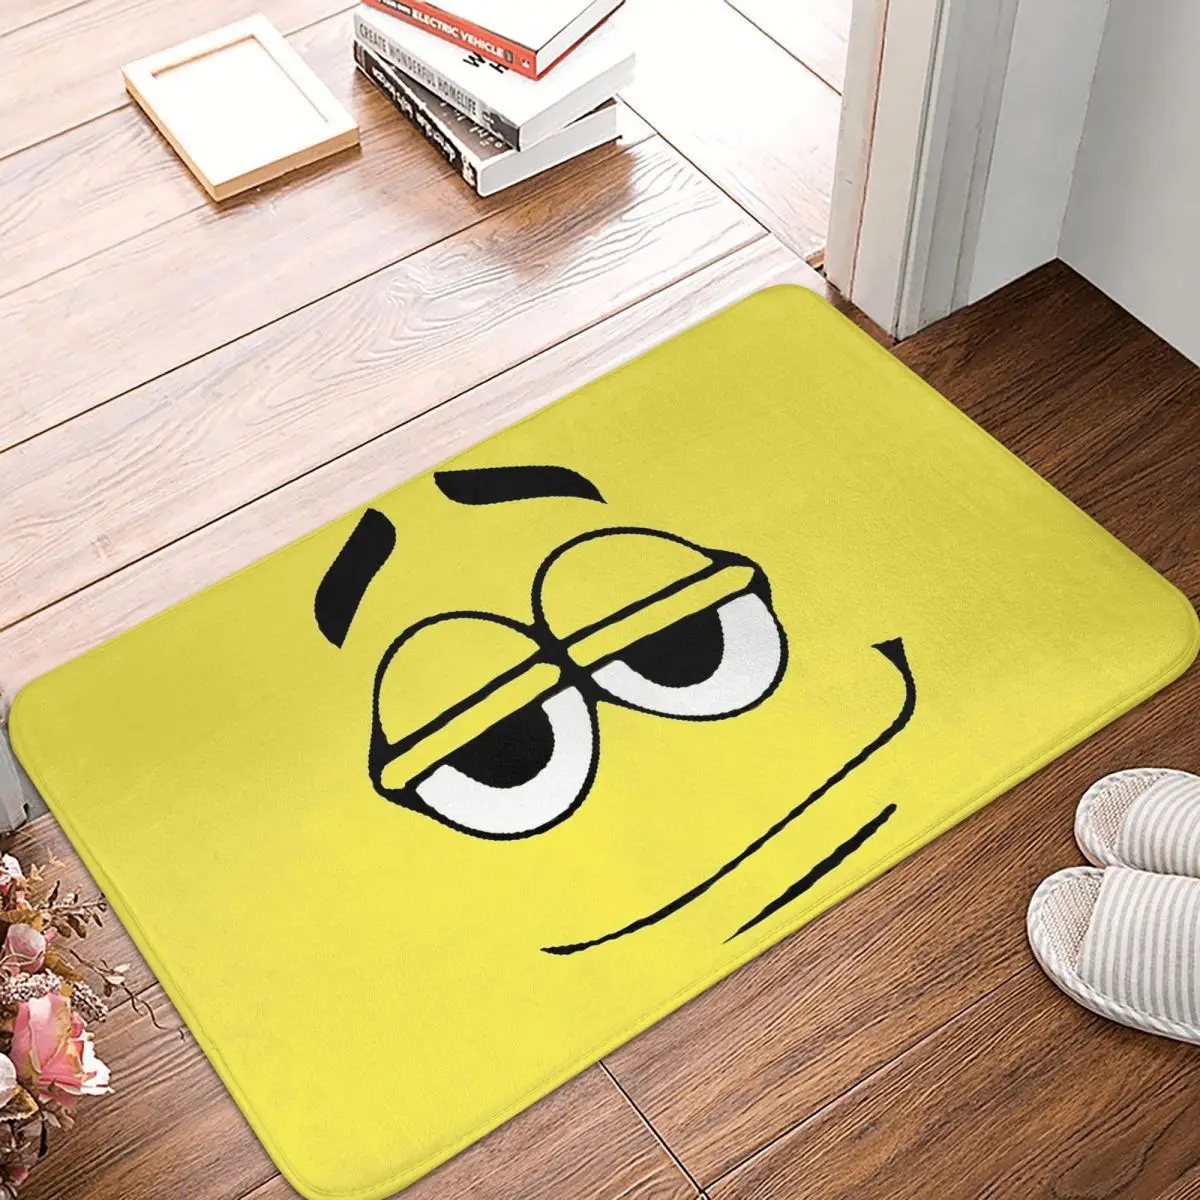 

Kitchen Non-Slip Carpet Yellow Candy Faces Flannel Mat Entrance Door Doormat Floor Decor Rug